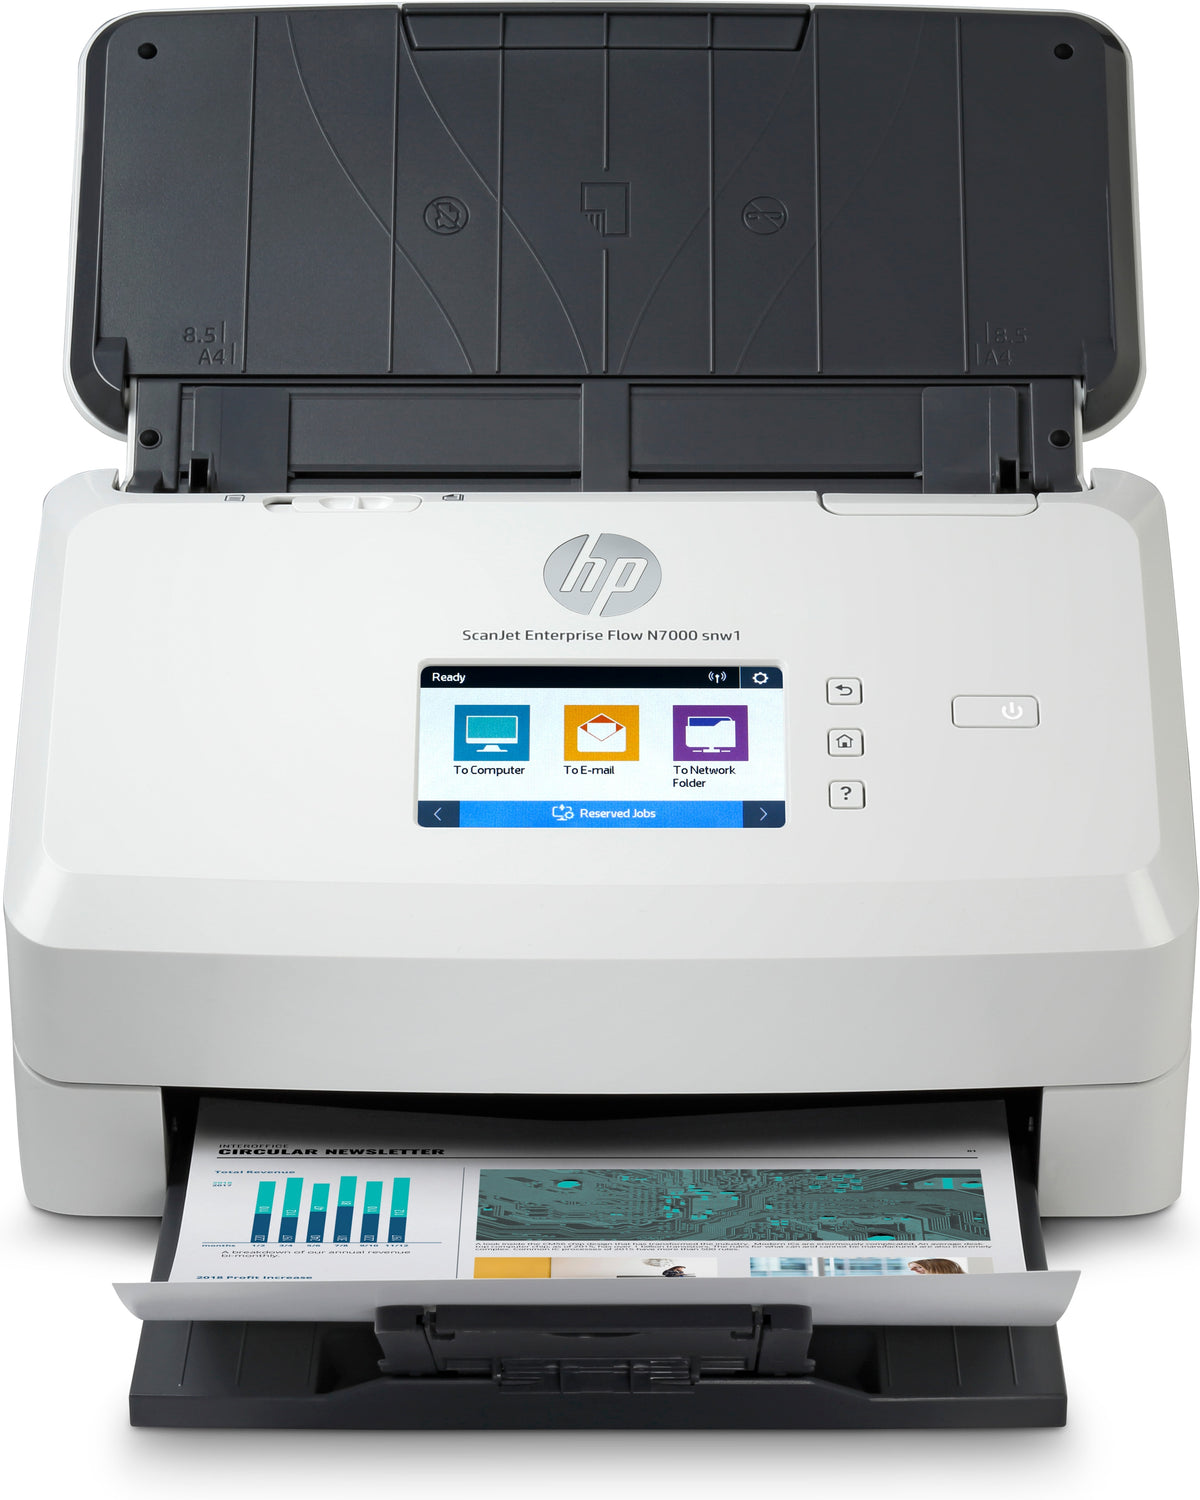 HP ScanJet Enterprise Flow N7000 snw1 - Escáner de documentos - CMOS/CIS - Dúplex - 216 x 3100 mm - 600 ppp x 600 ppp - hasta 75 ppm (mono) / hasta 75 ppm (color) - AAD (80 hojas) - hasta hasta 7500 escaneos por día - USB 3.0, LAN, Wi-Fi(n)